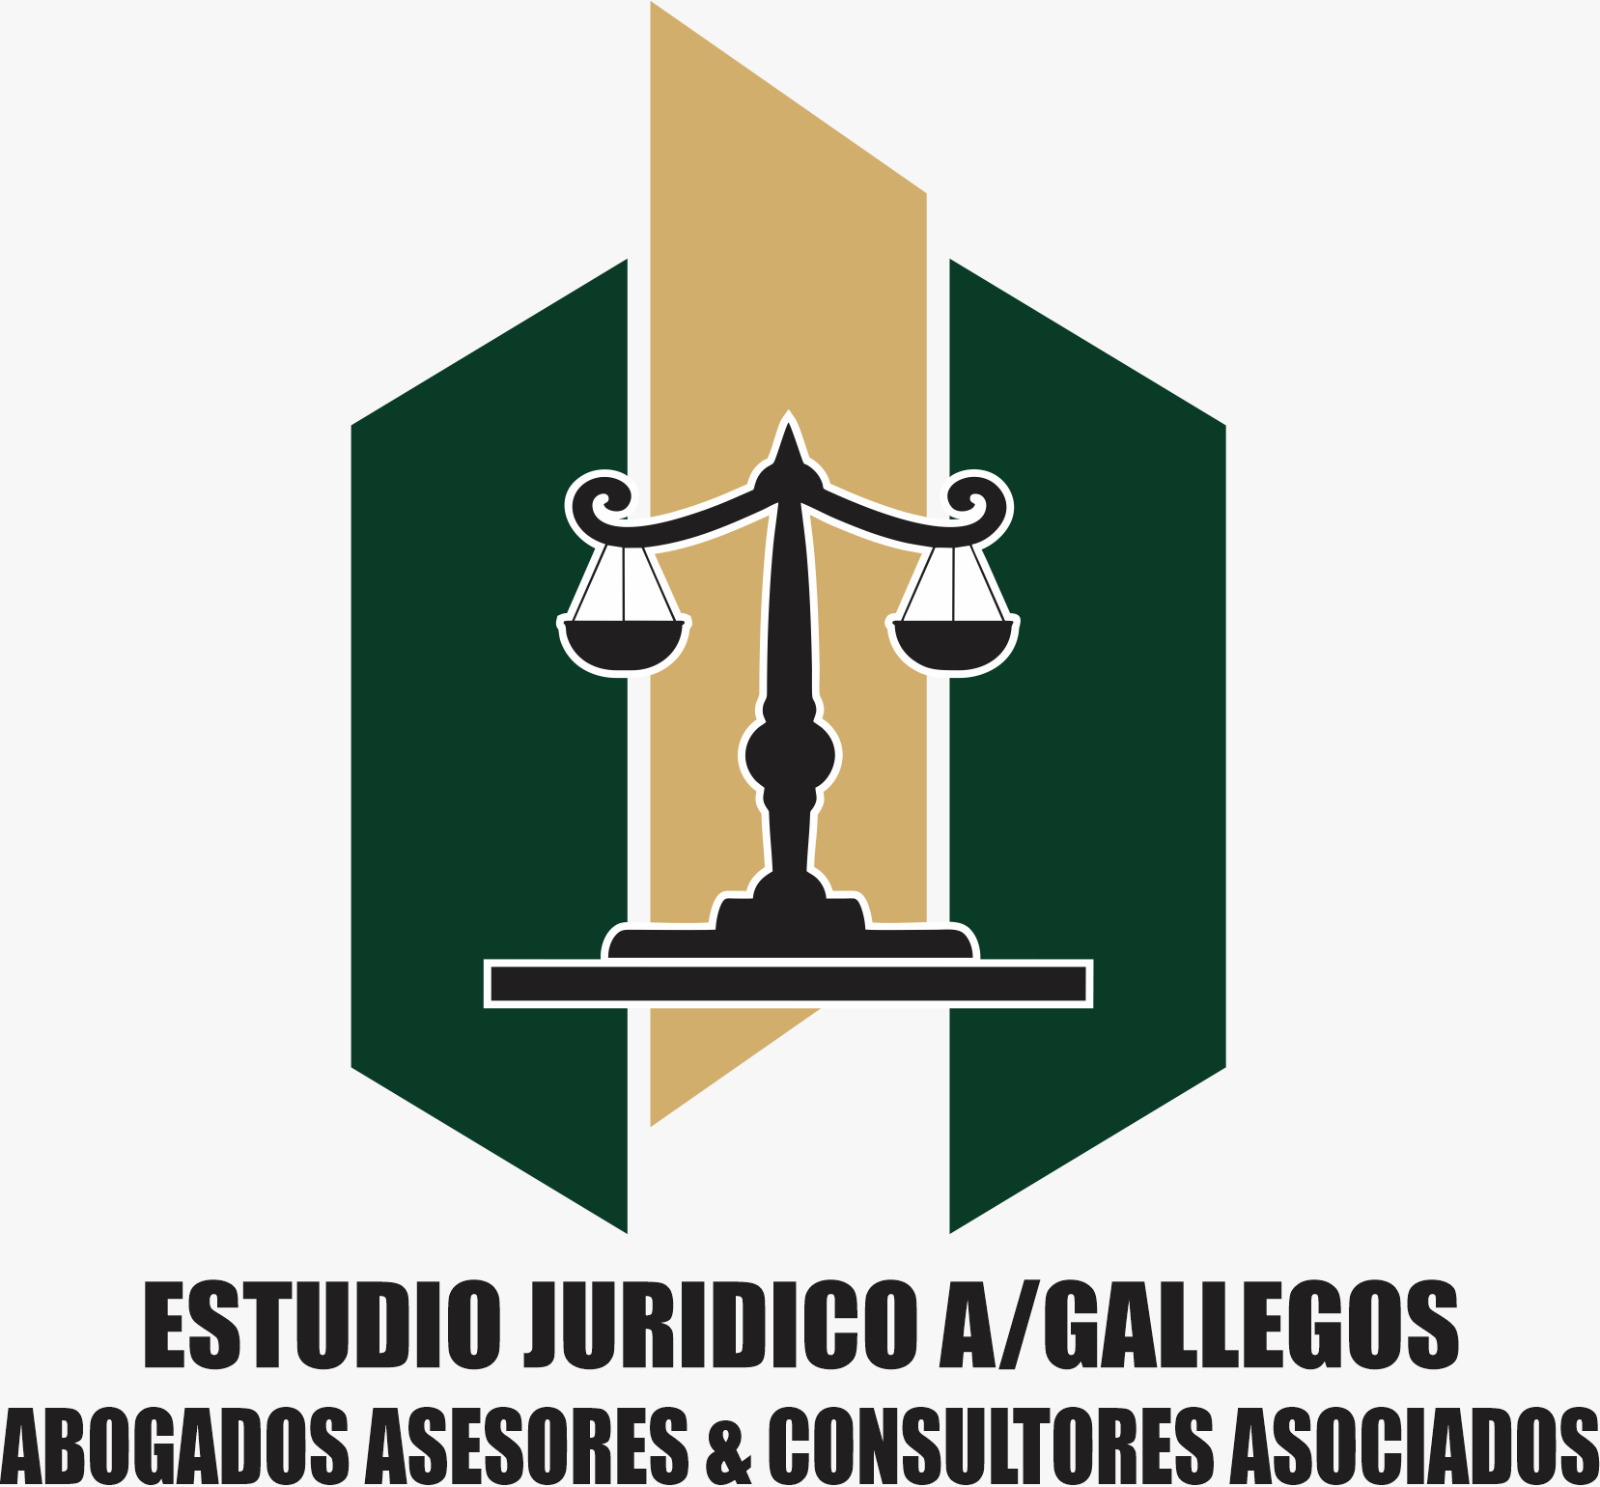 ESTUDIO JURIDICO A/GALLEGOS CH ABOGADOS ASESORES Y CONSULTORES ASOCIADOS – PERU